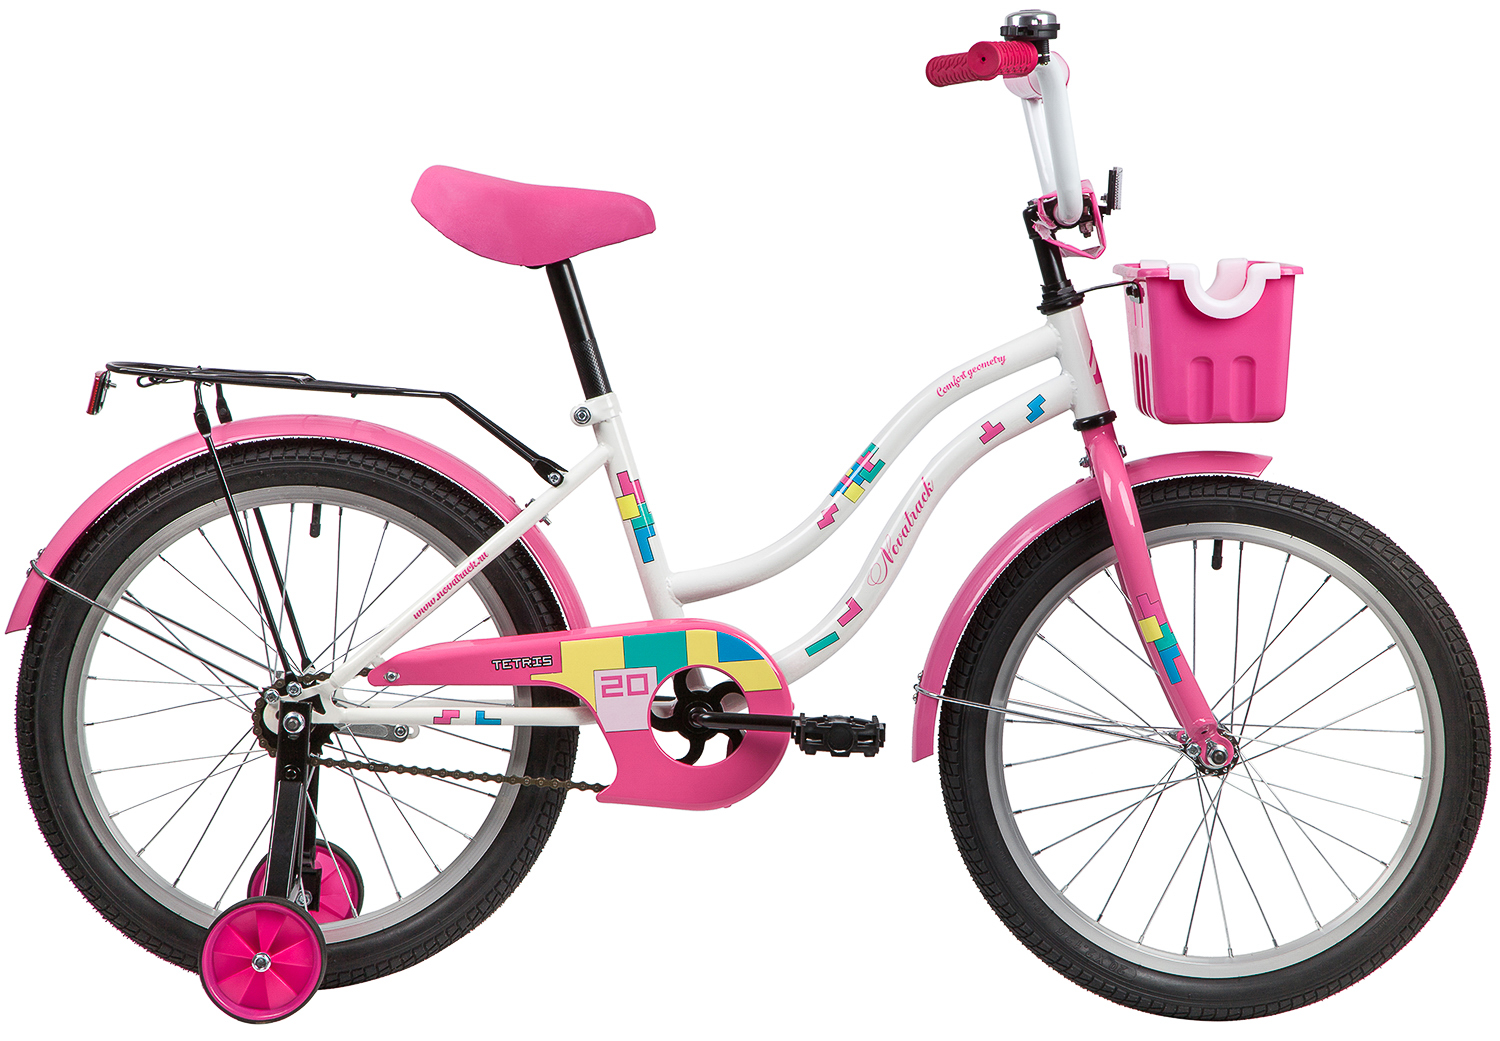  Отзывы о Детском велосипеде Novatrack Tetris 20 2020